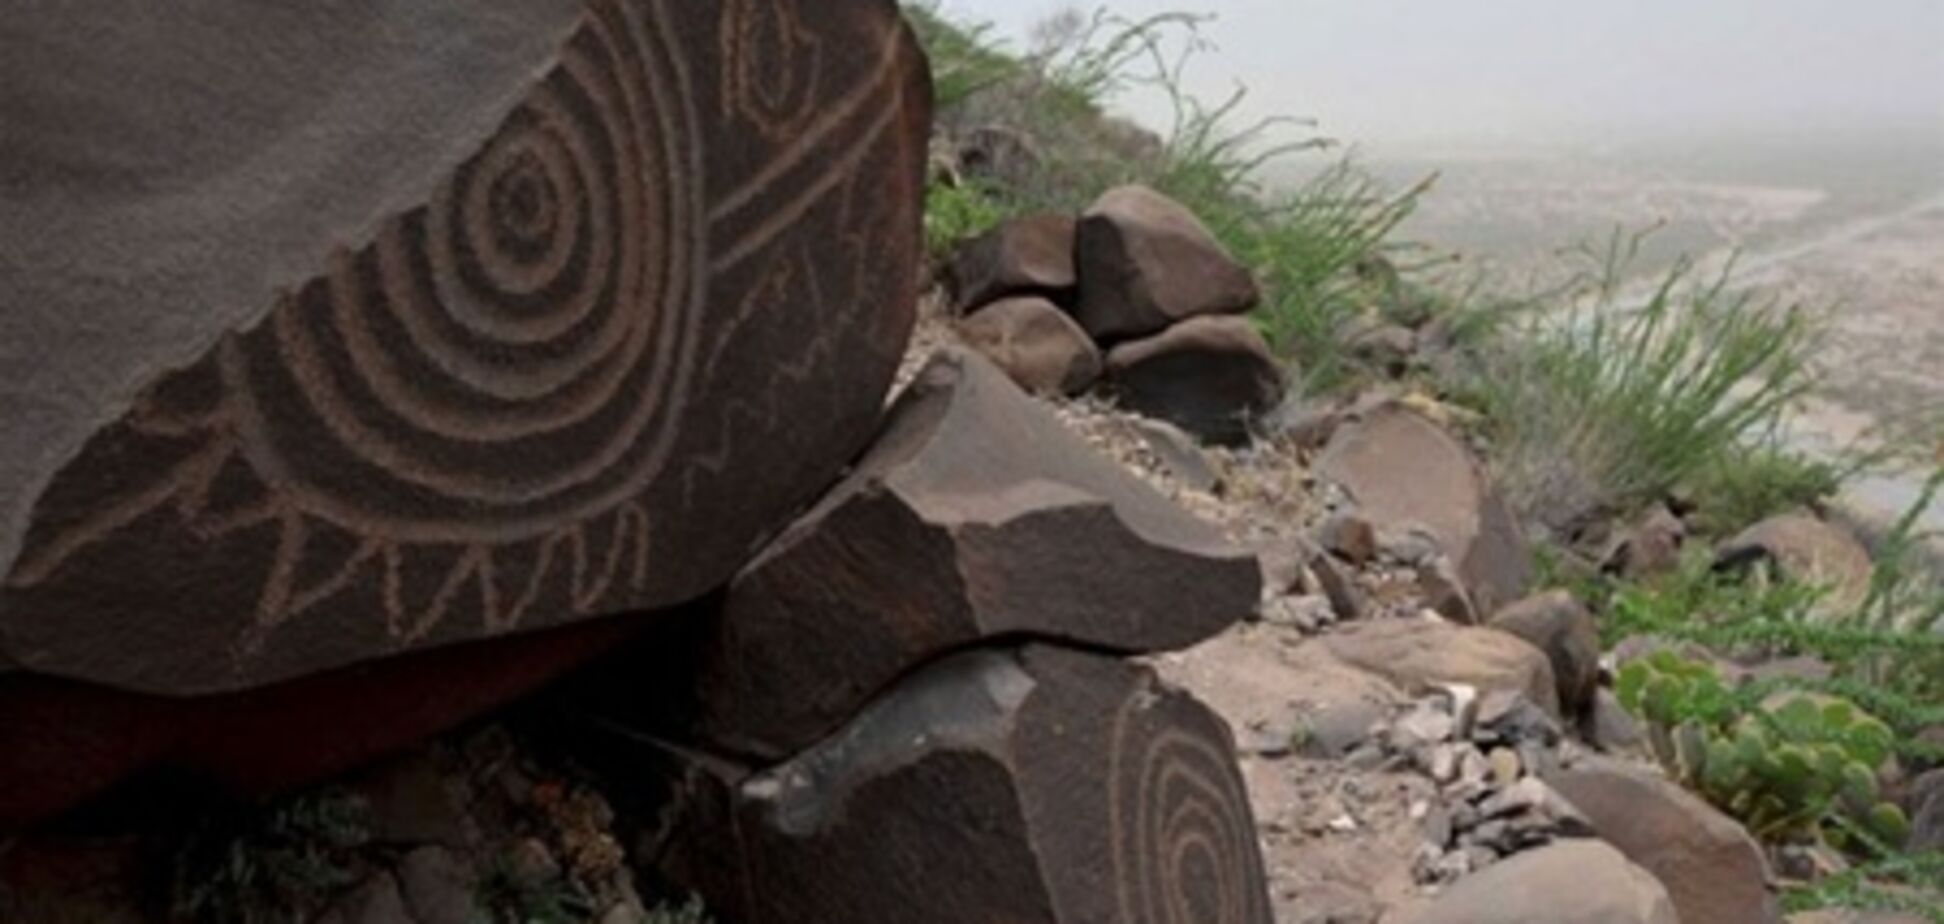 В Мексике найдены тысячи камней, расписанные в виде звездной карты